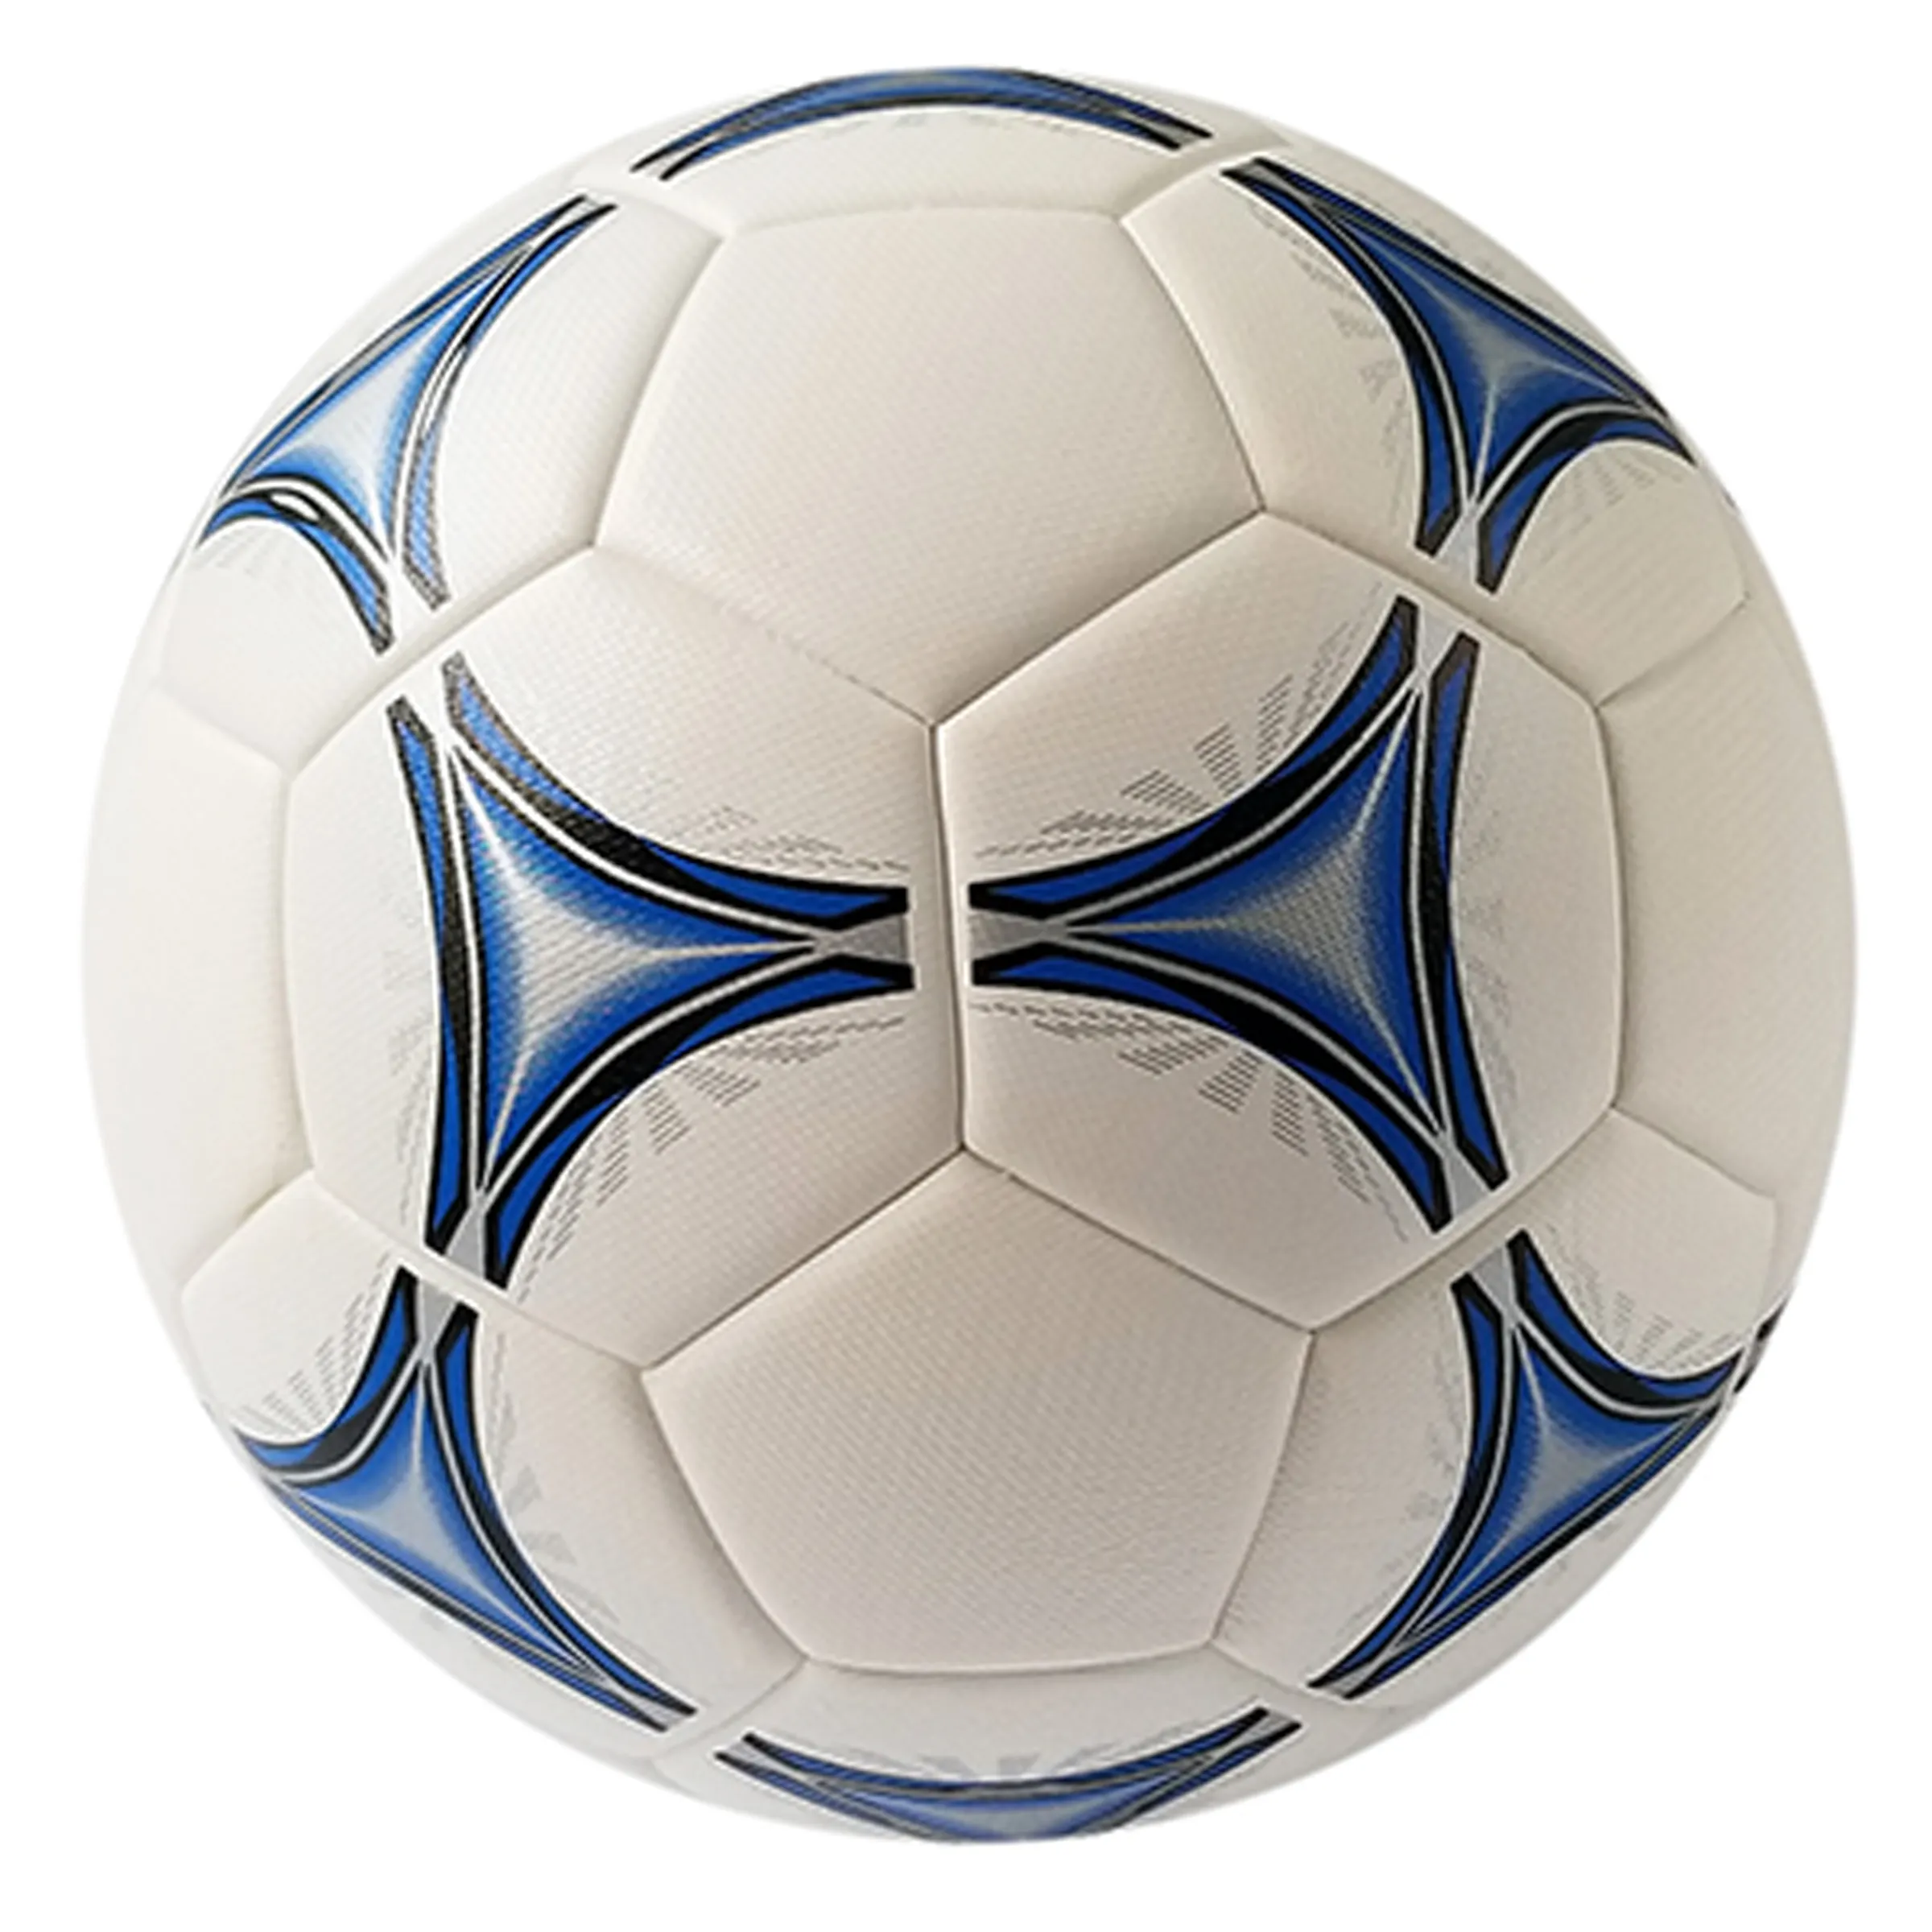 Jogo de futebol de alta qualidade personalizado com logotipo e design de impressão de bola de futebol PU tamanho 5 térmica ligada para esportes